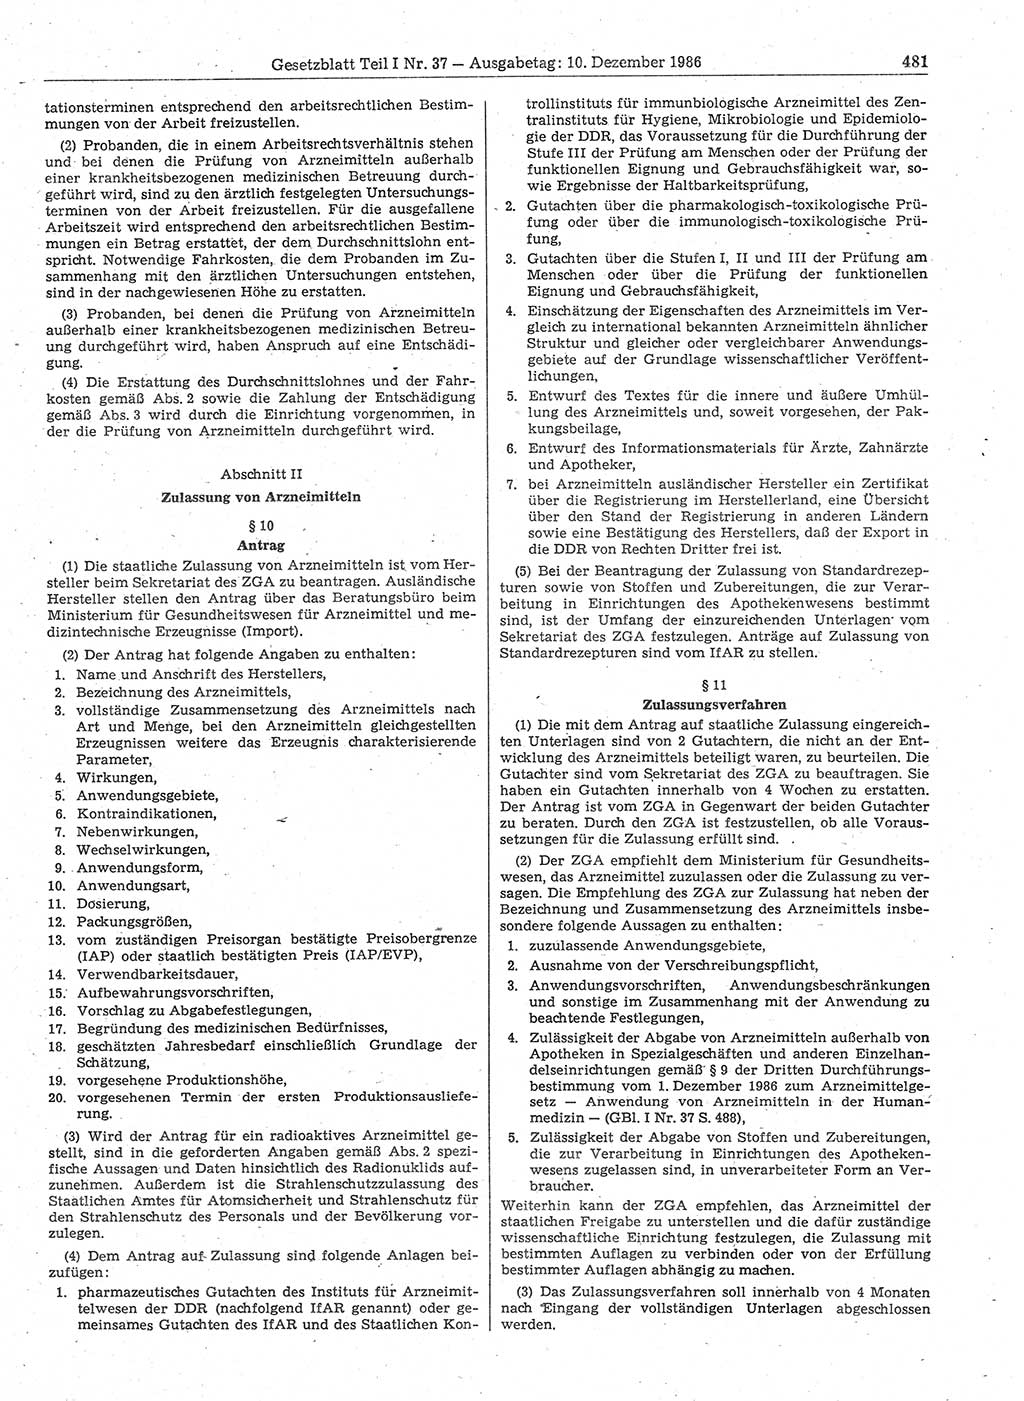 Gesetzblatt (GBl.) der Deutschen Demokratischen Republik (DDR) Teil Ⅰ 1986, Seite 481 (GBl. DDR Ⅰ 1986, S. 481)